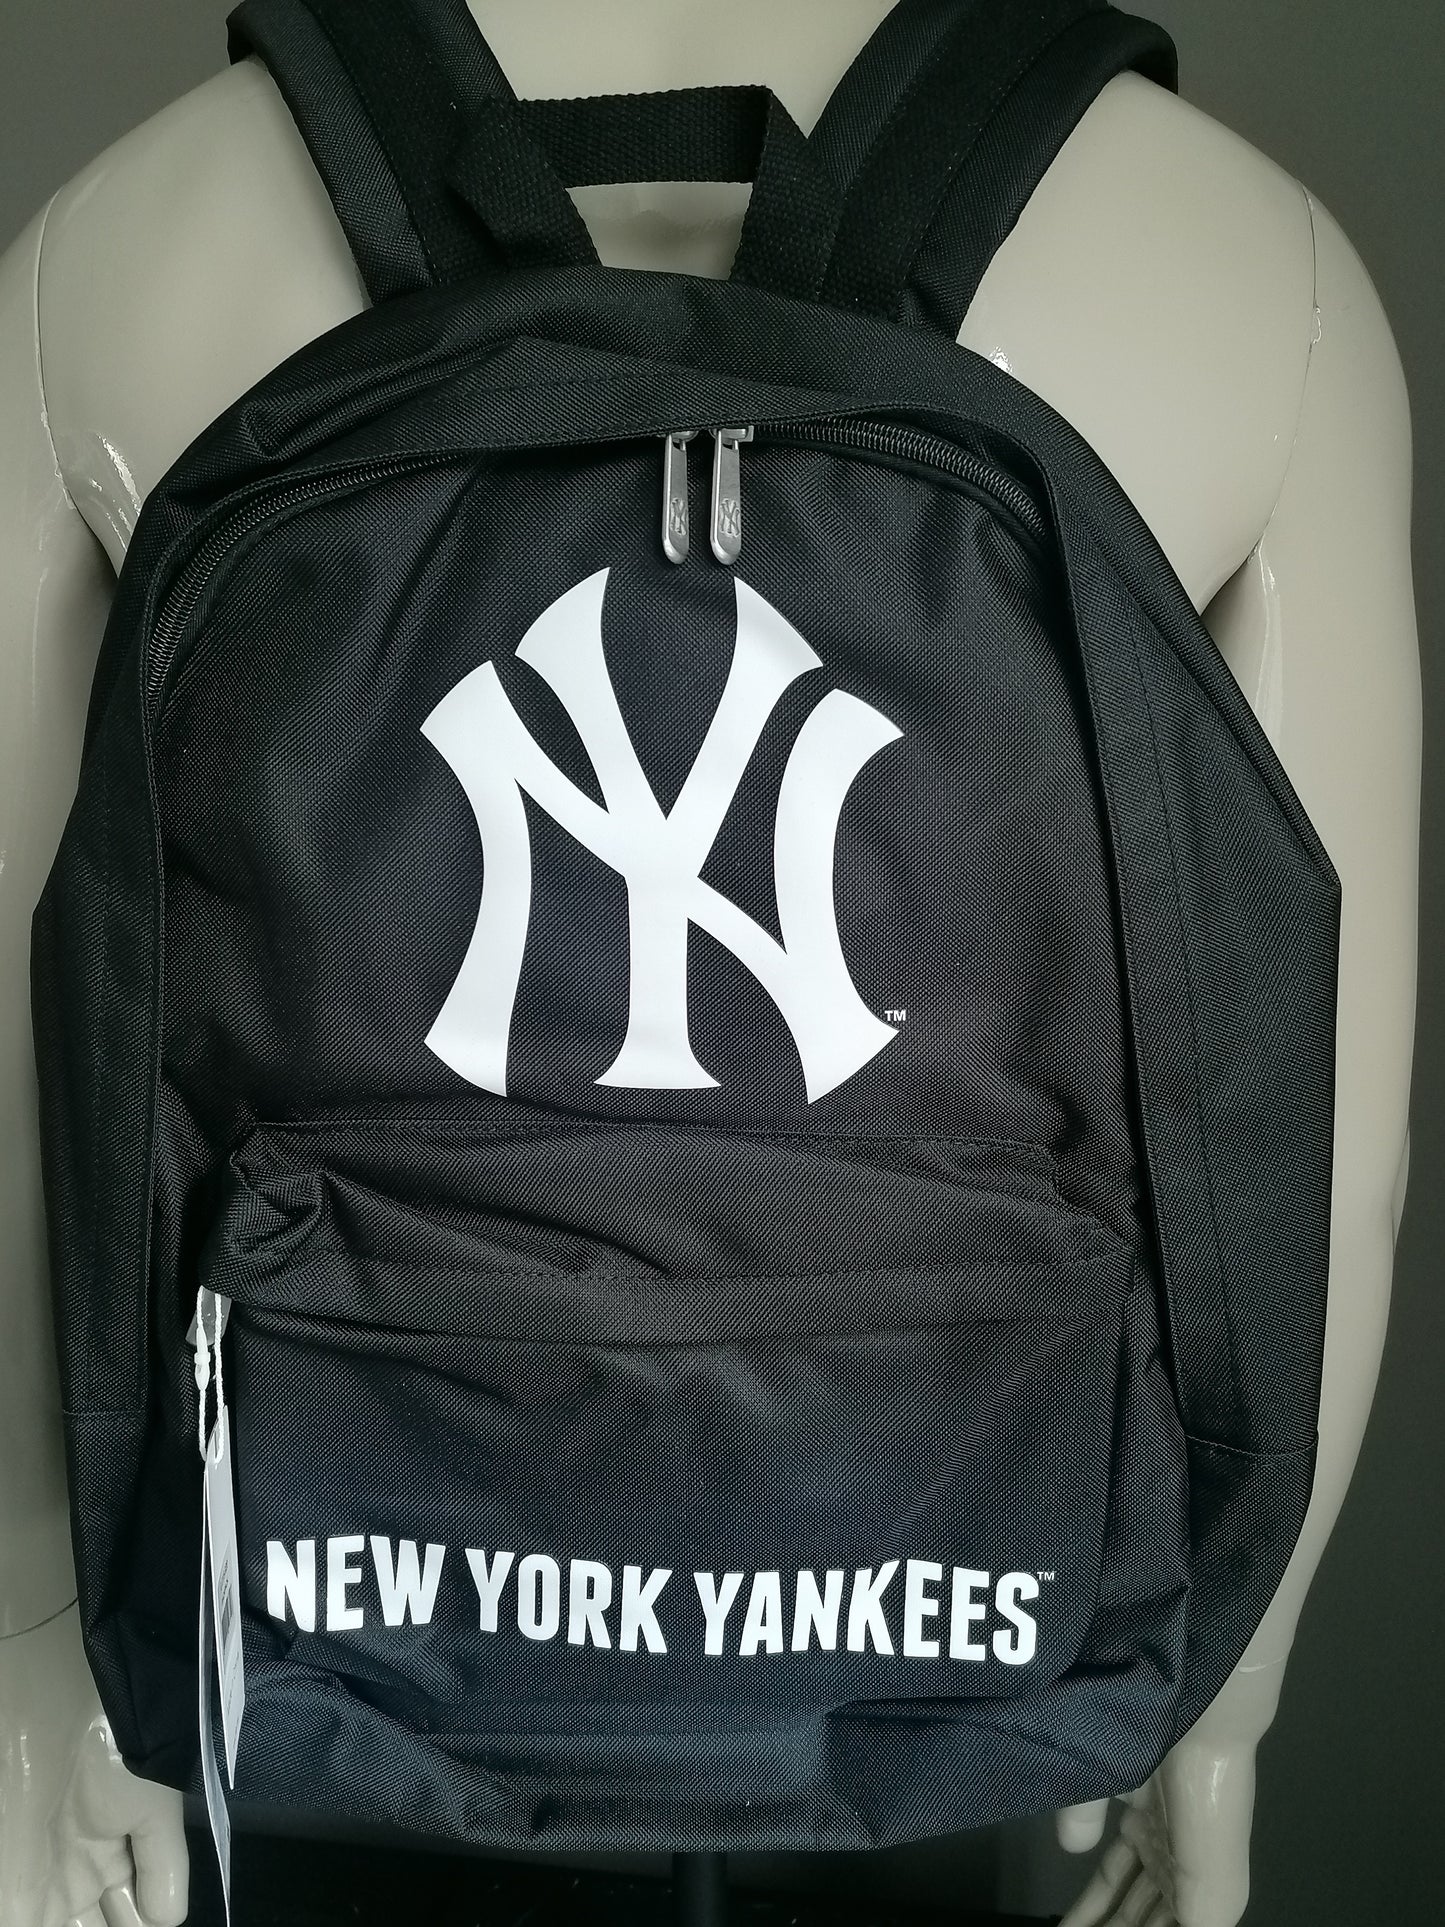 Major League Baseball Original New Yorkes Backpack / Backpack. Black and white. Double inner pocket.